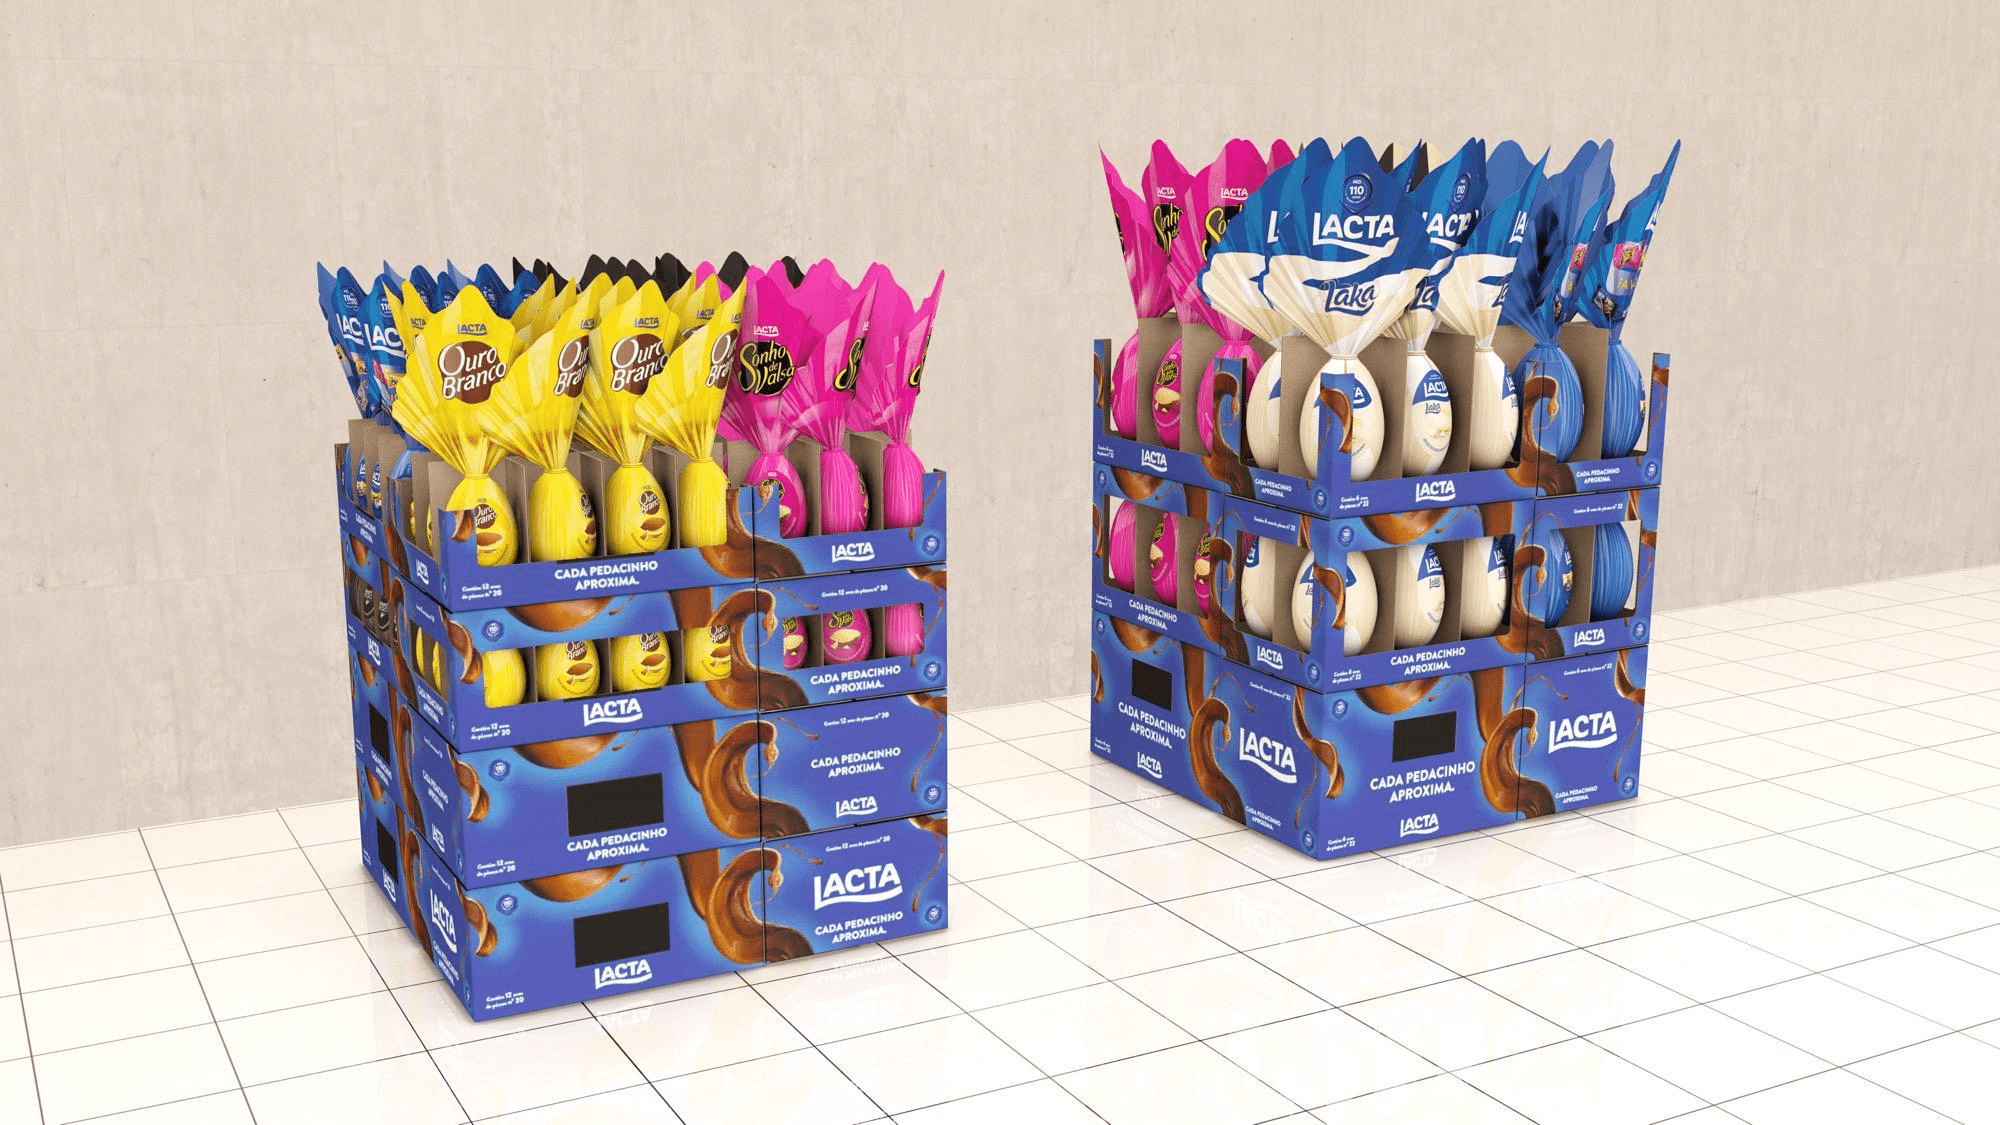 Featured image for “Caixa se transforma em expositor de ovos de Páscoa e otimiza espaço dos supermercados”